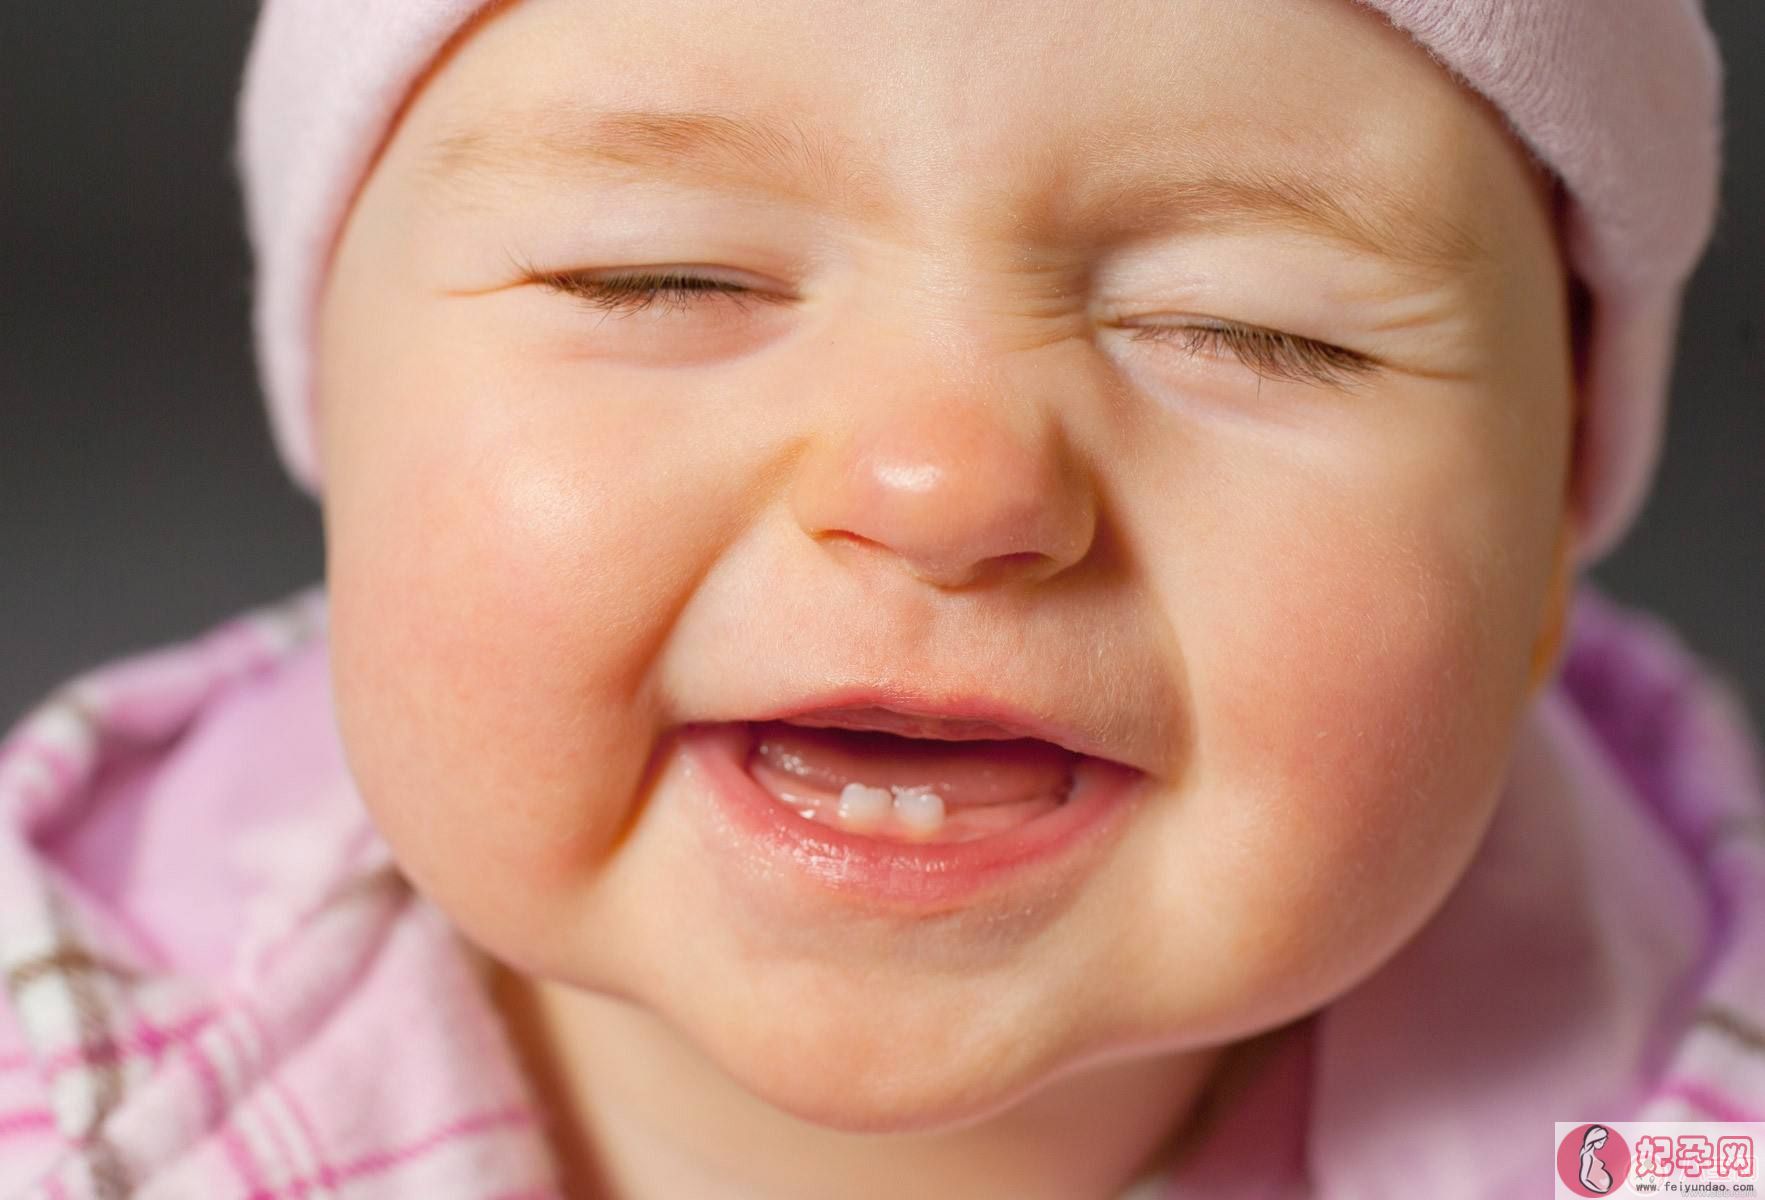 婴儿爱咬乳头是乳量不足吗 幼儿爱咬乳头如何处理